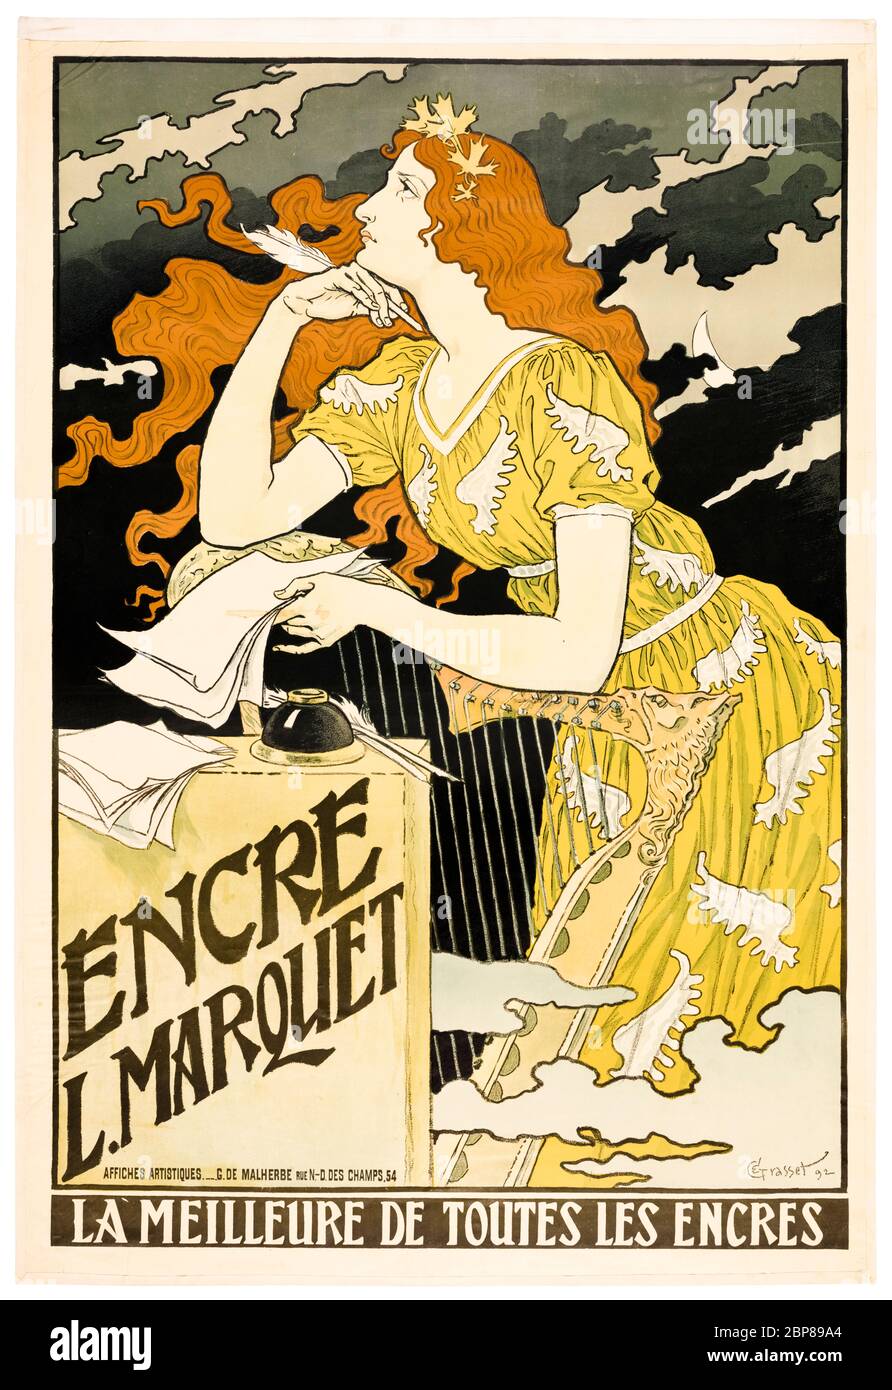 Eugène Grasset, encre L. Marquet, póster de Art Nouveau, 1892 Foto de stock